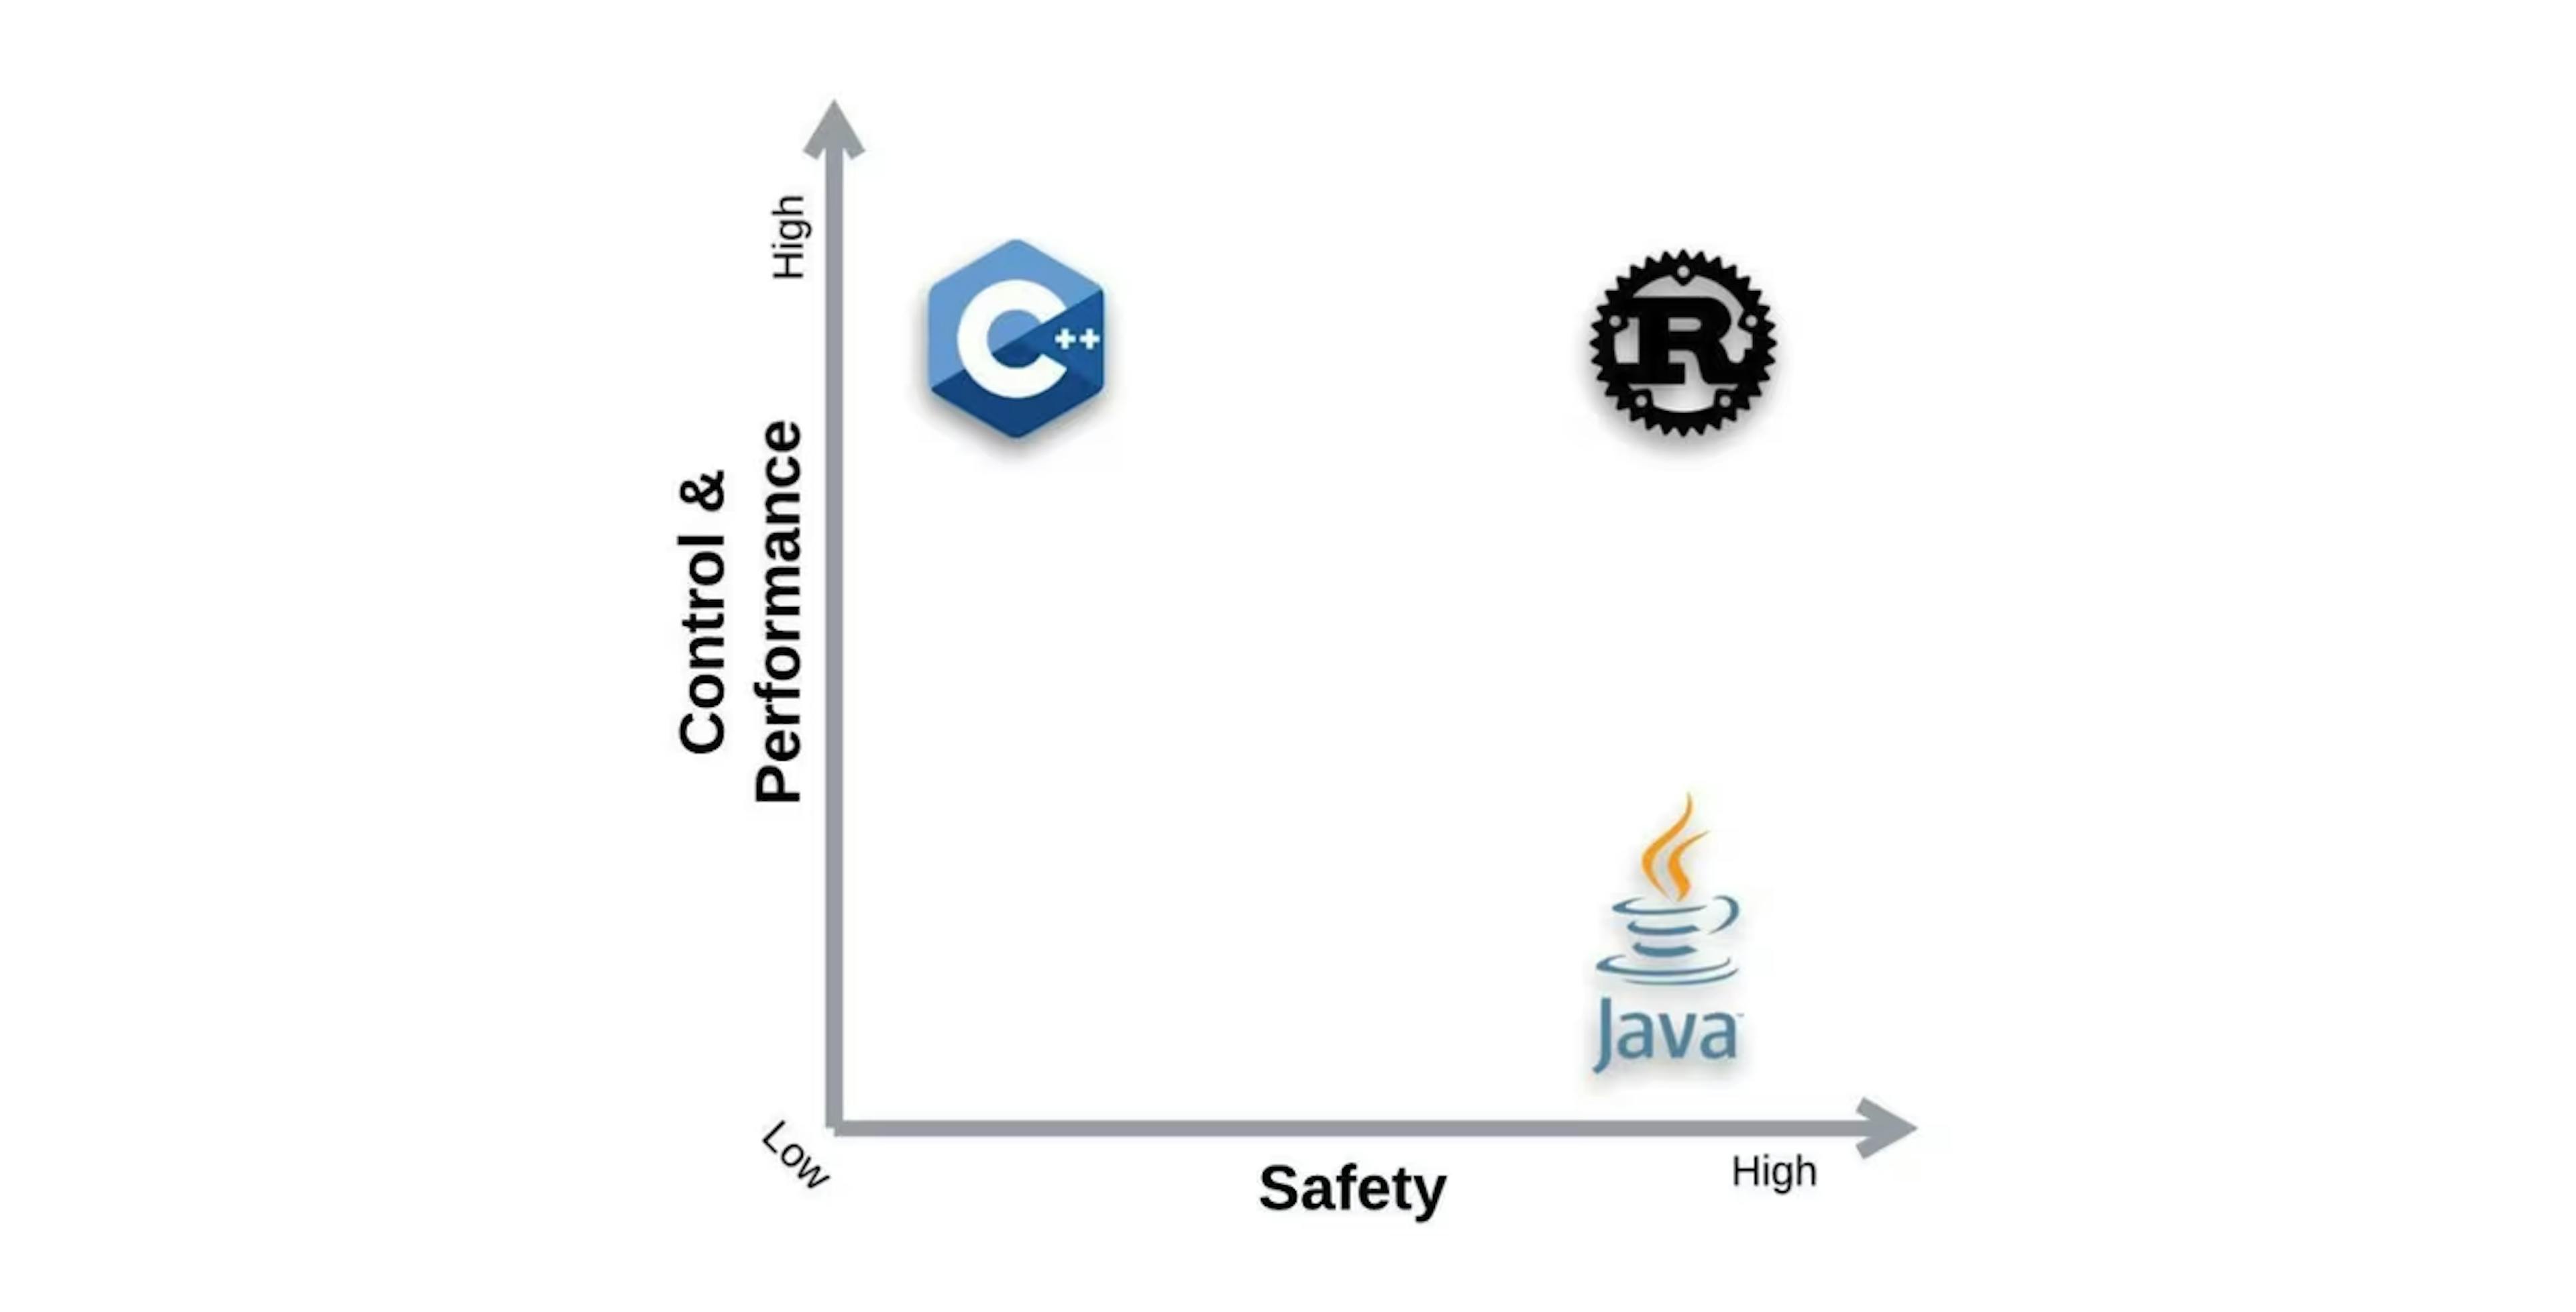 图 2：Rust 可以更好地控制内存管理并提供更高的安全性而不会出现内存问题。